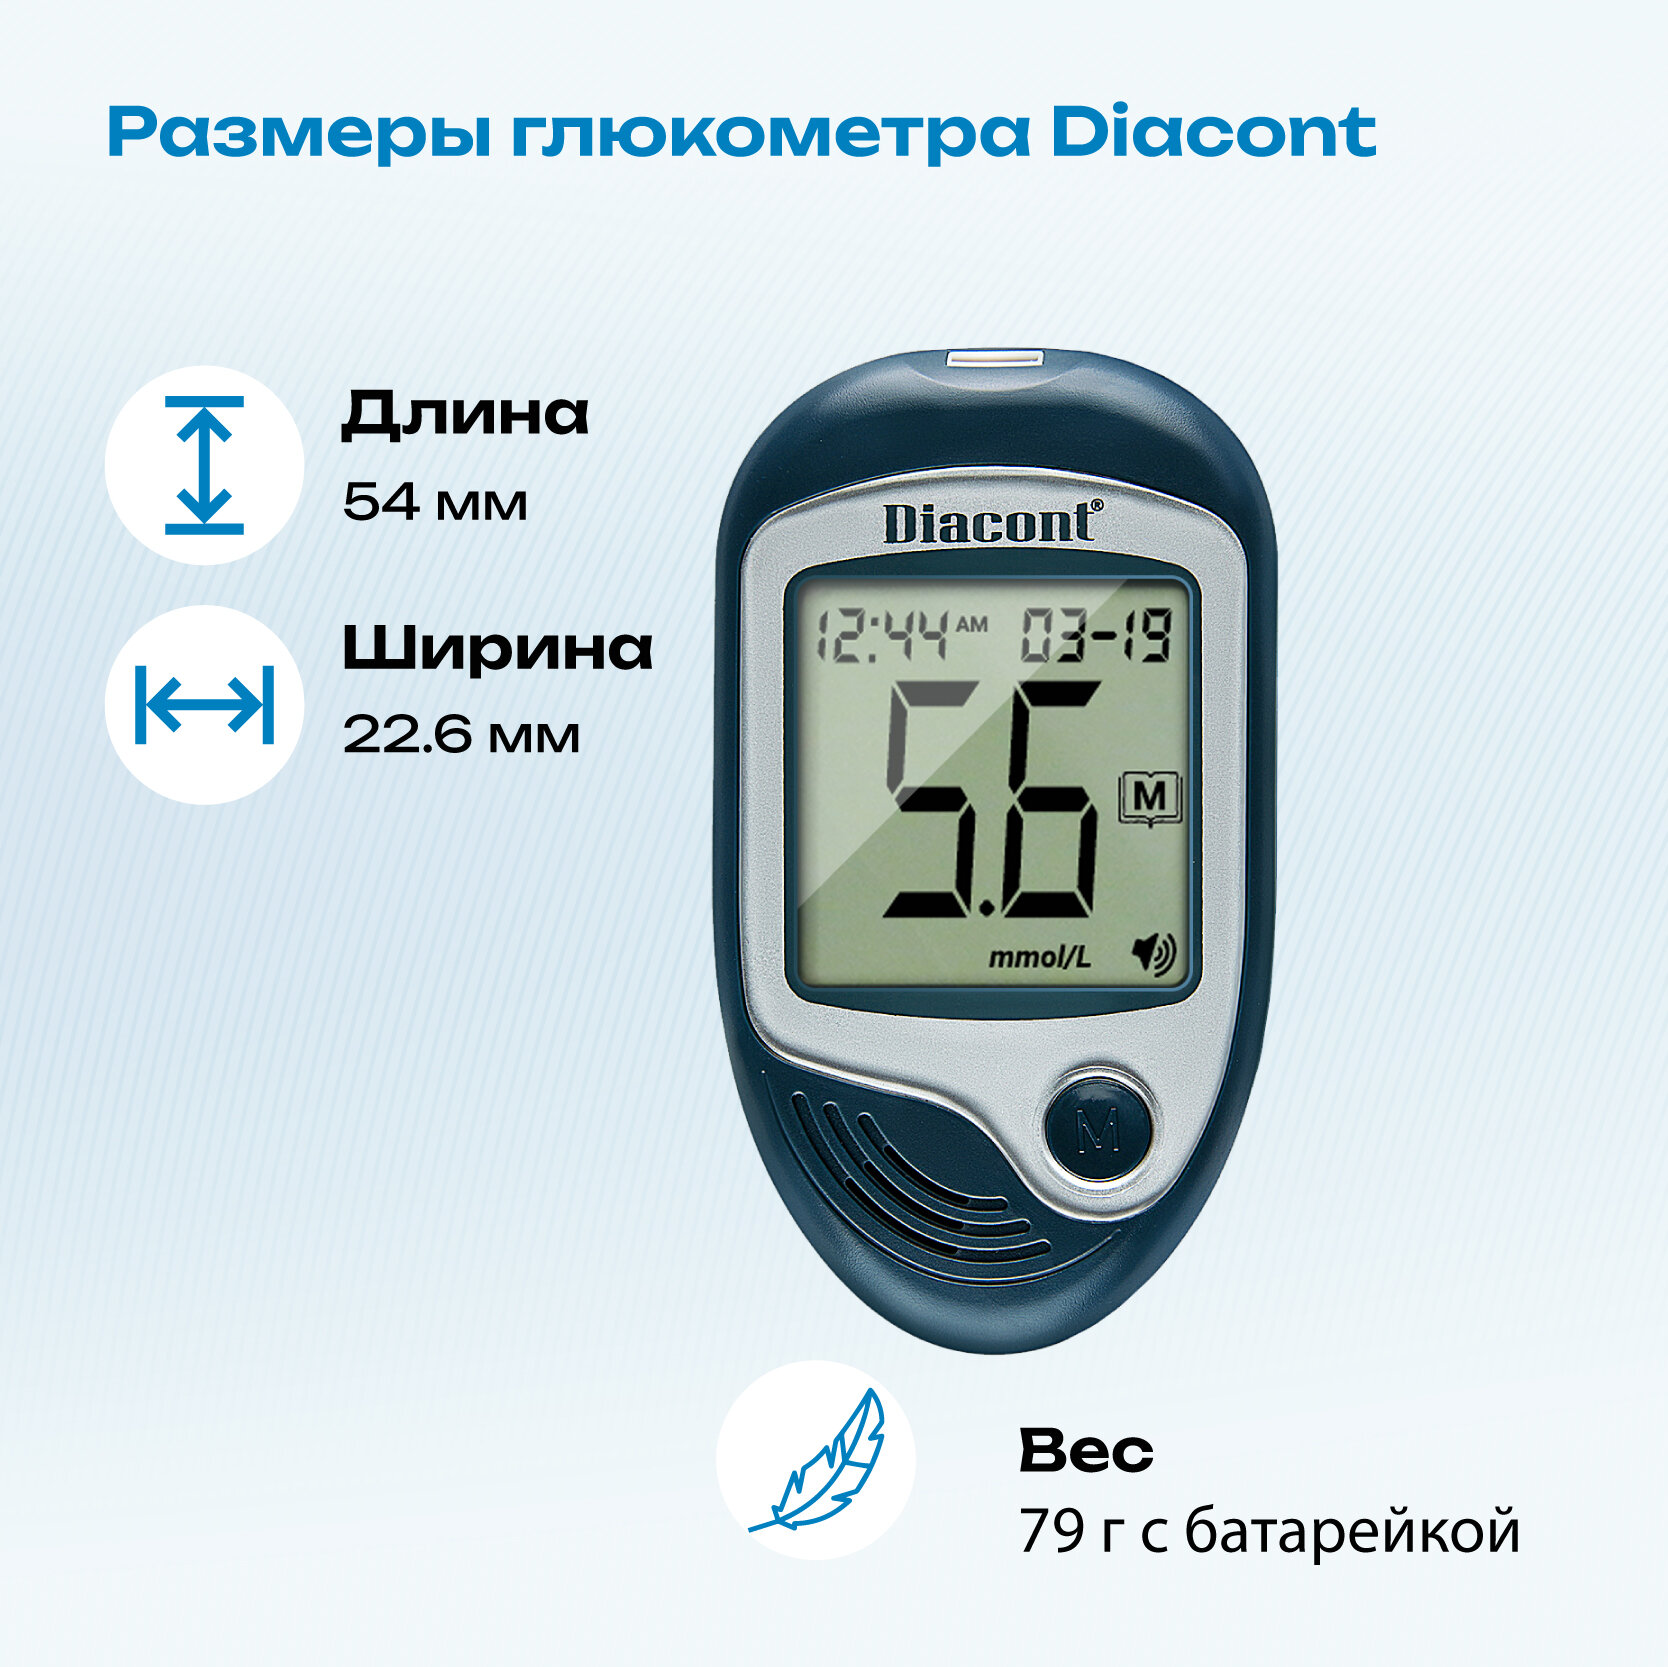 Диаконт Voice система контроля уровня глюкозы в крови с принадлежностями ООО Диаконт - фото №14